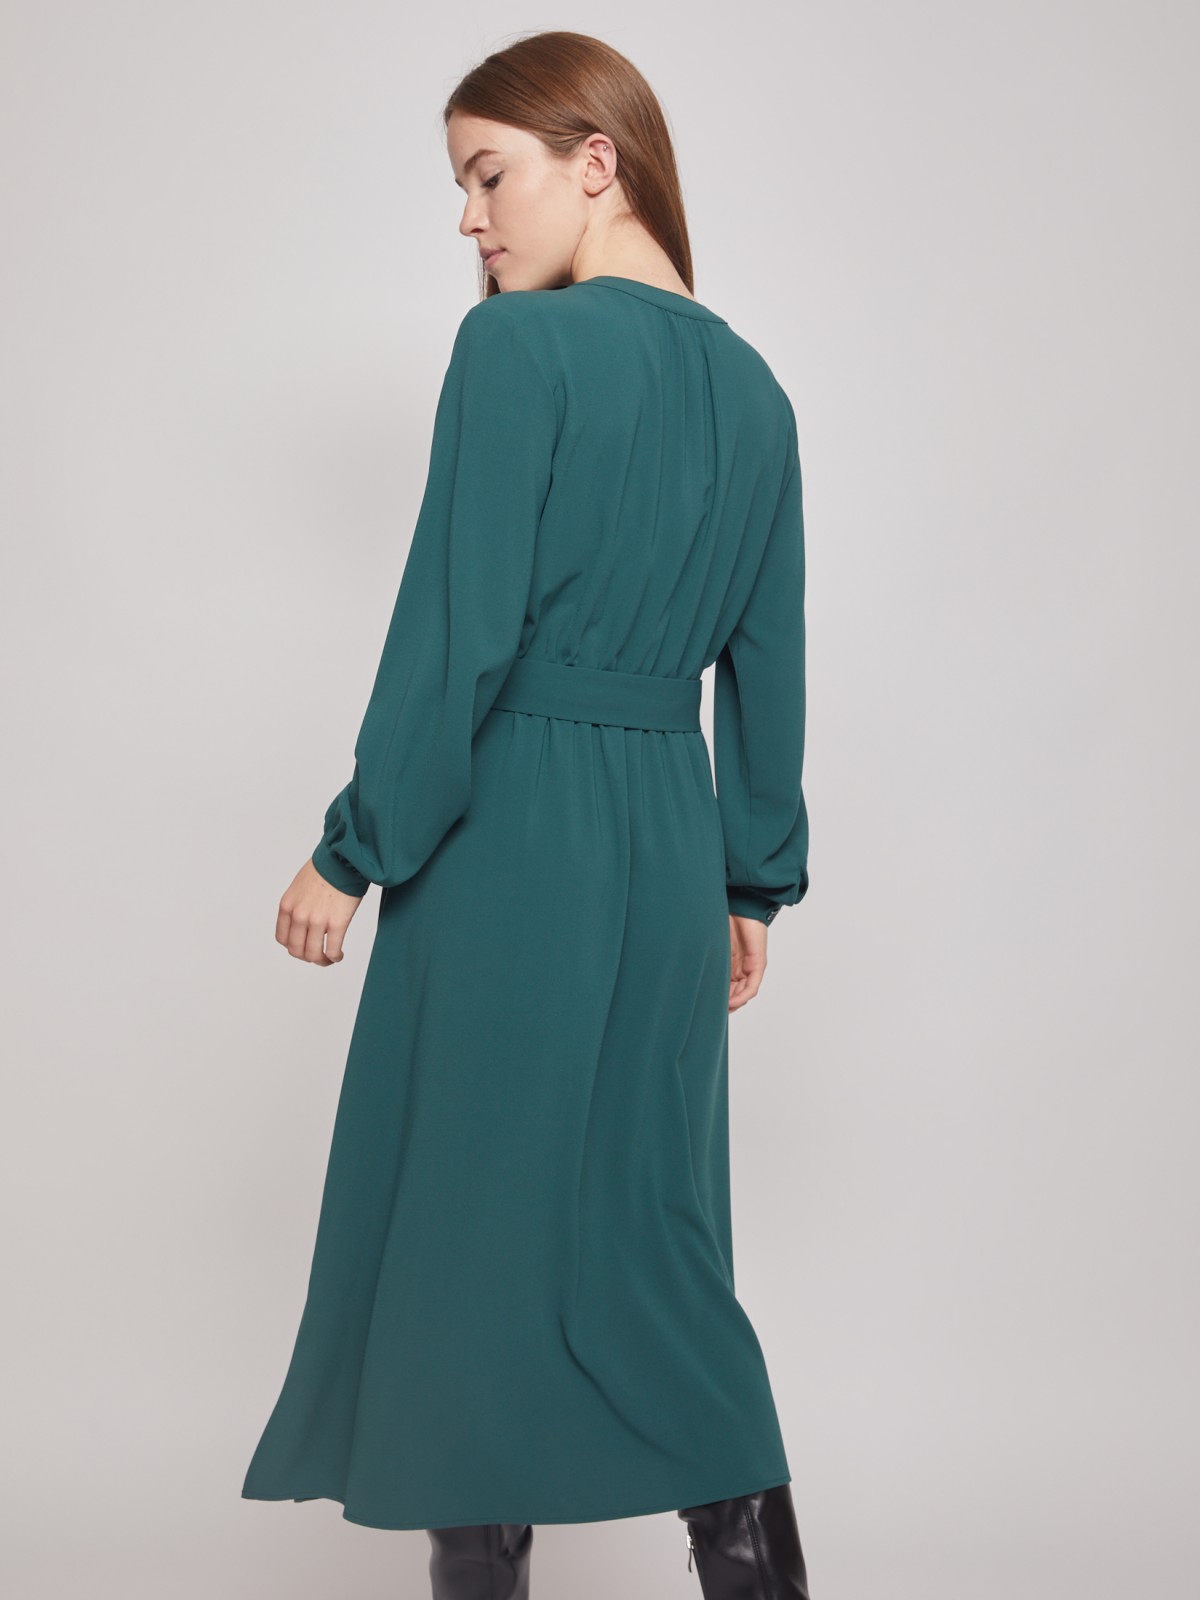 Платье-рубашка с длинными рукавами Zolla, цвет Темно-зеленый, размер S